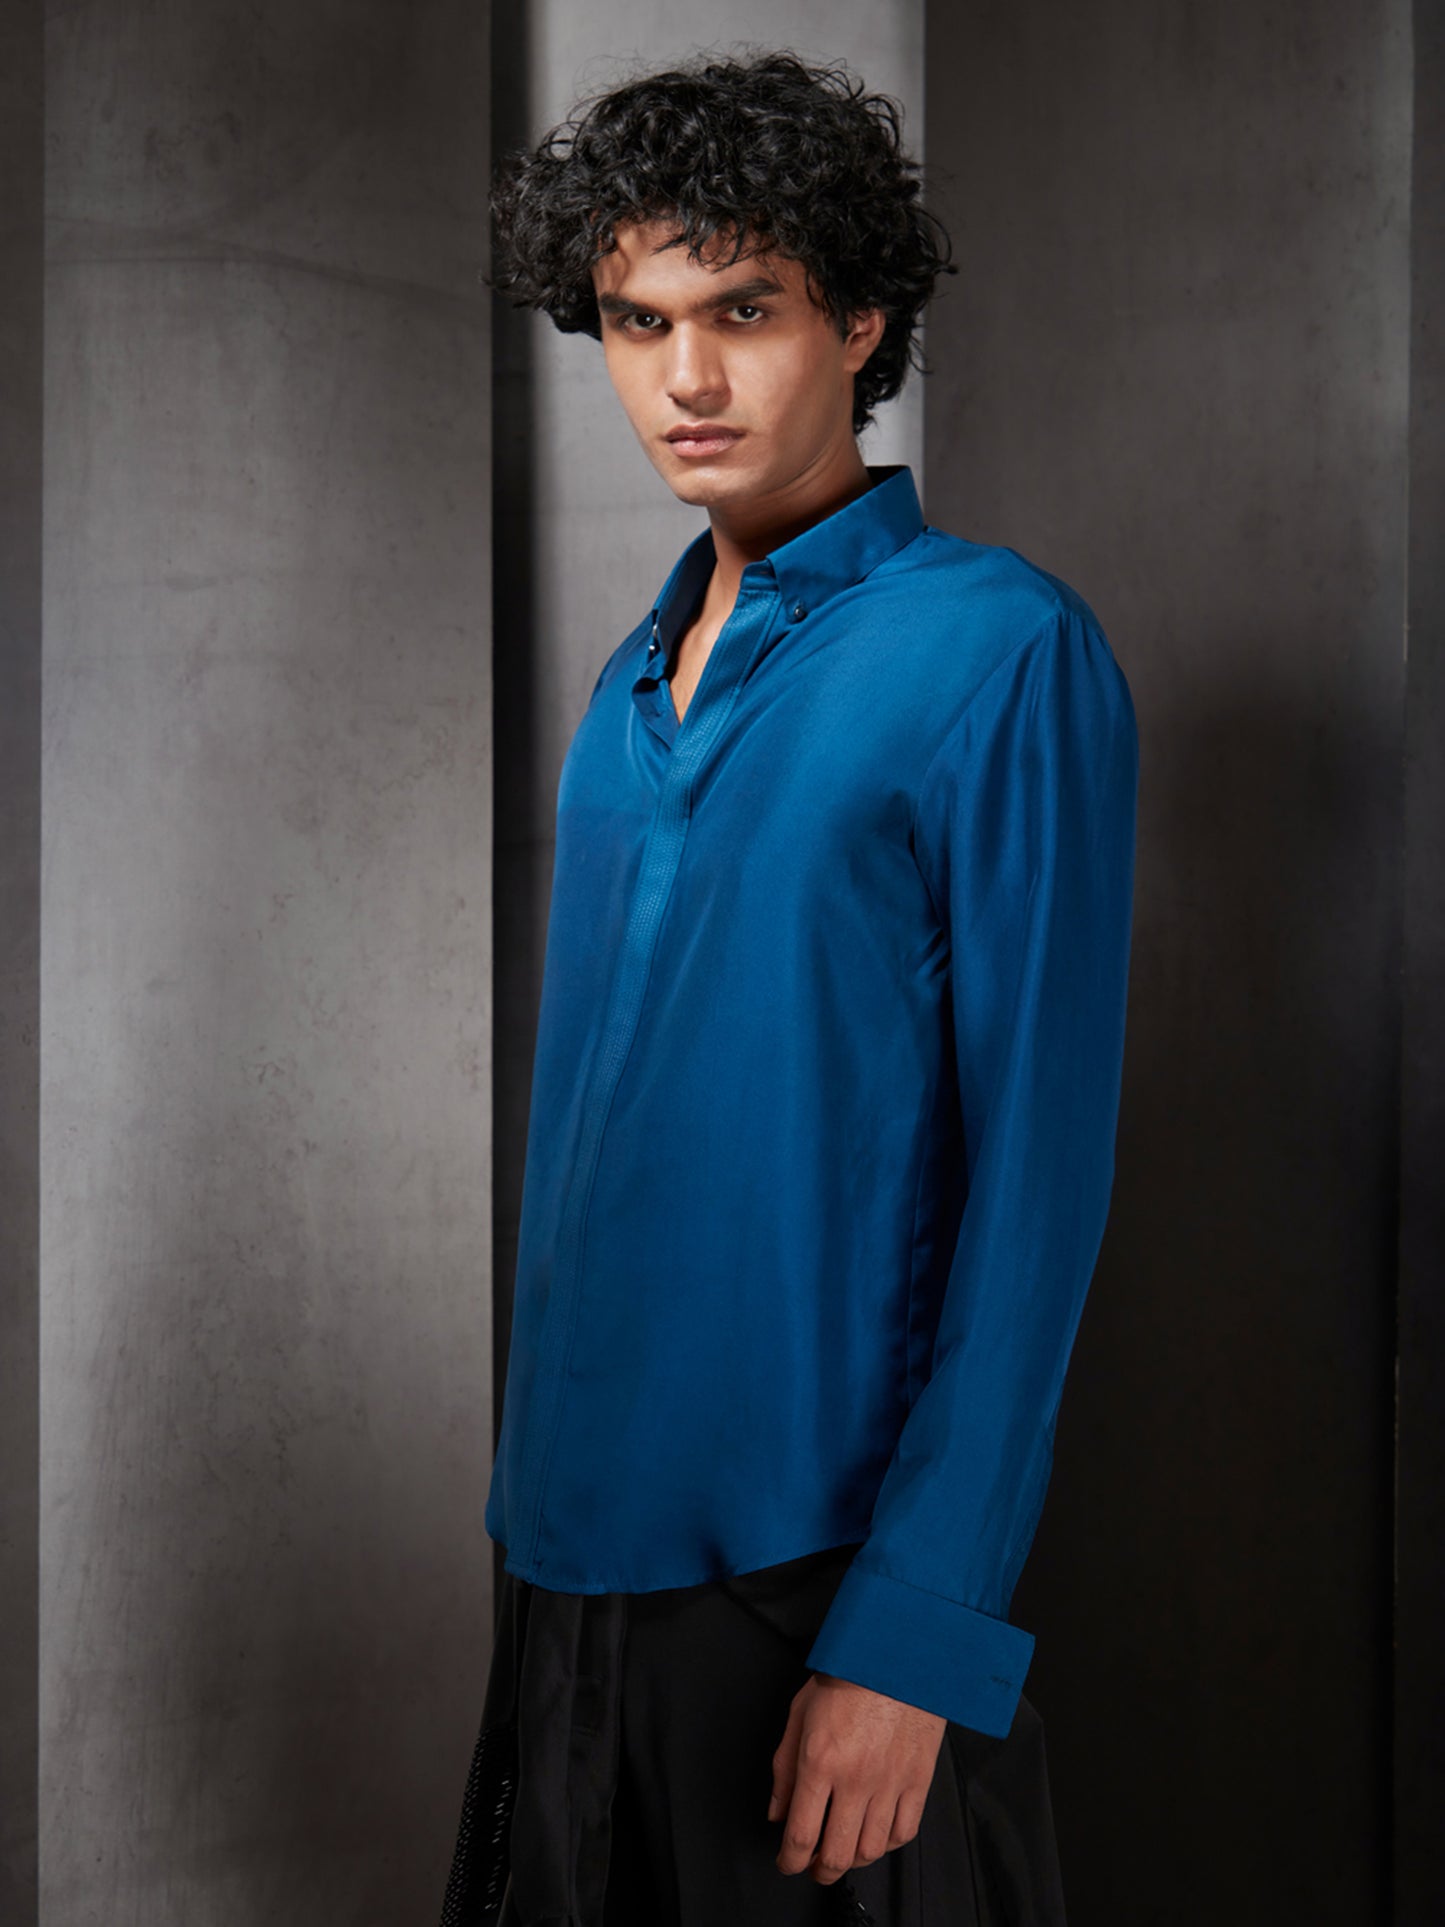 Galaxy Blue Silk Twill Shirt